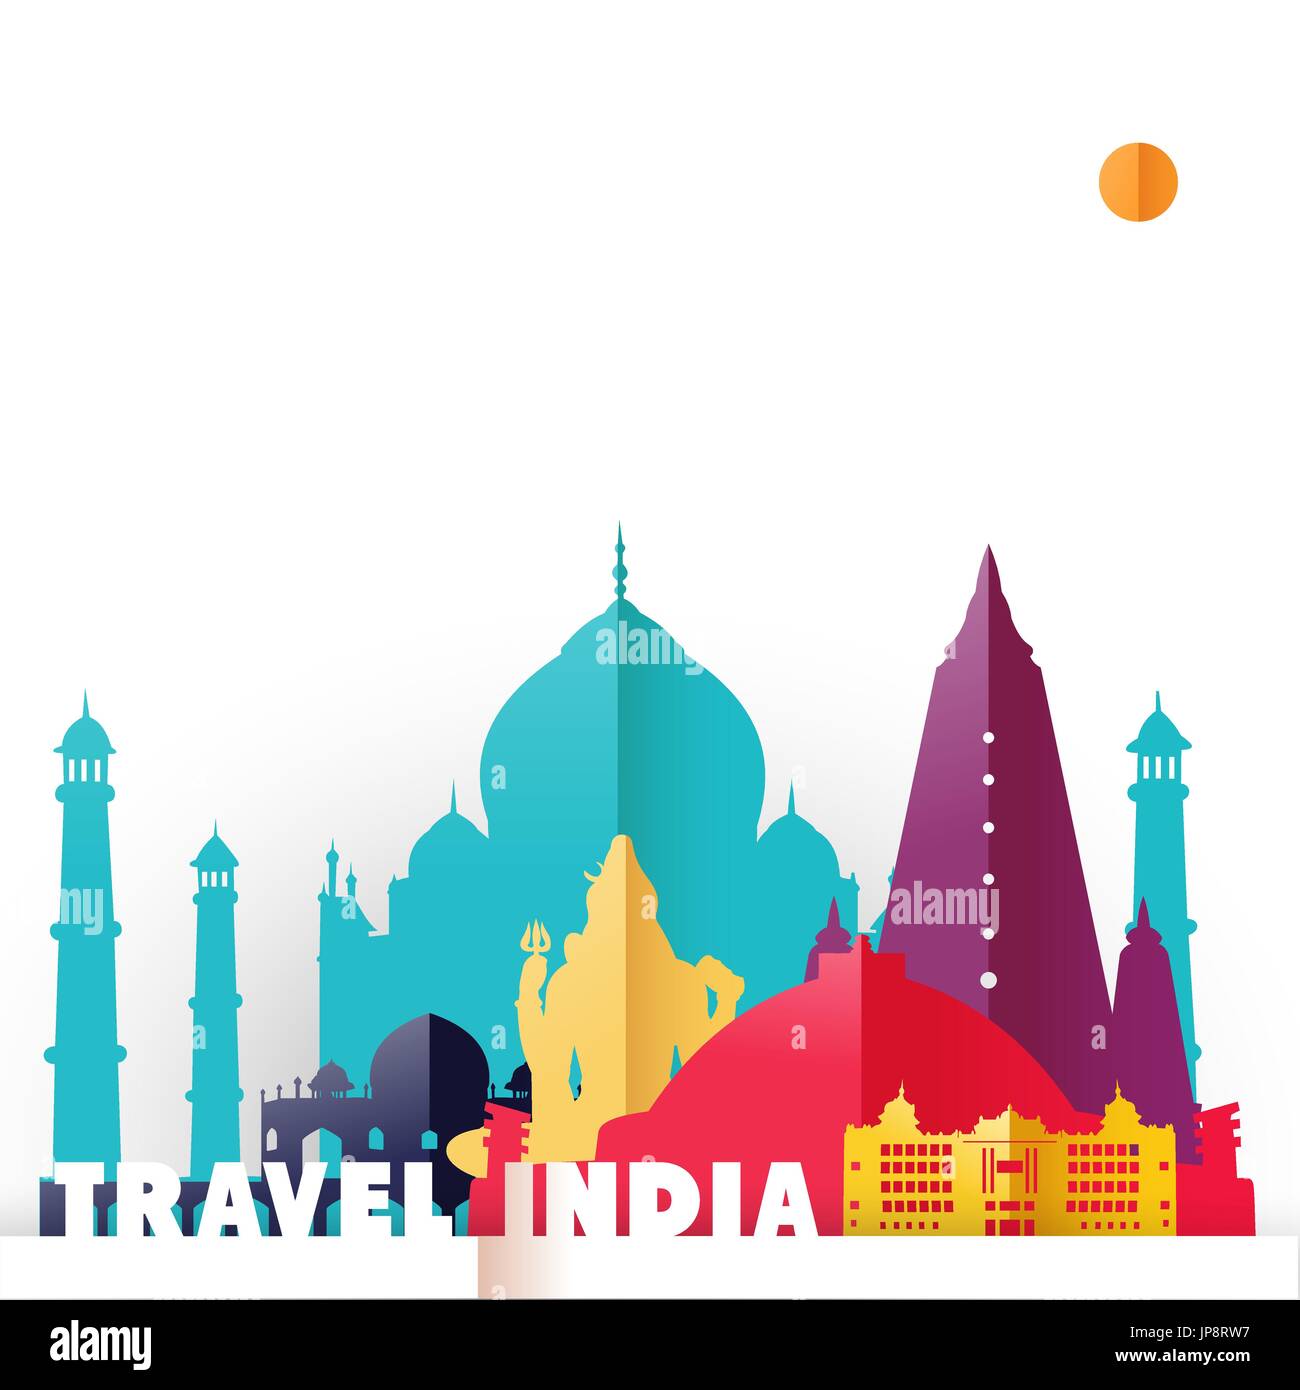 Reisen Sie Indien Konzept Abbildung in Papier schneiden Stil, weltberühmten Sehenswürdigkeiten von Indianerland. Taj Mahal, Shiva-Statue, buddhistische Tempel enthält. EP Stock Vektor